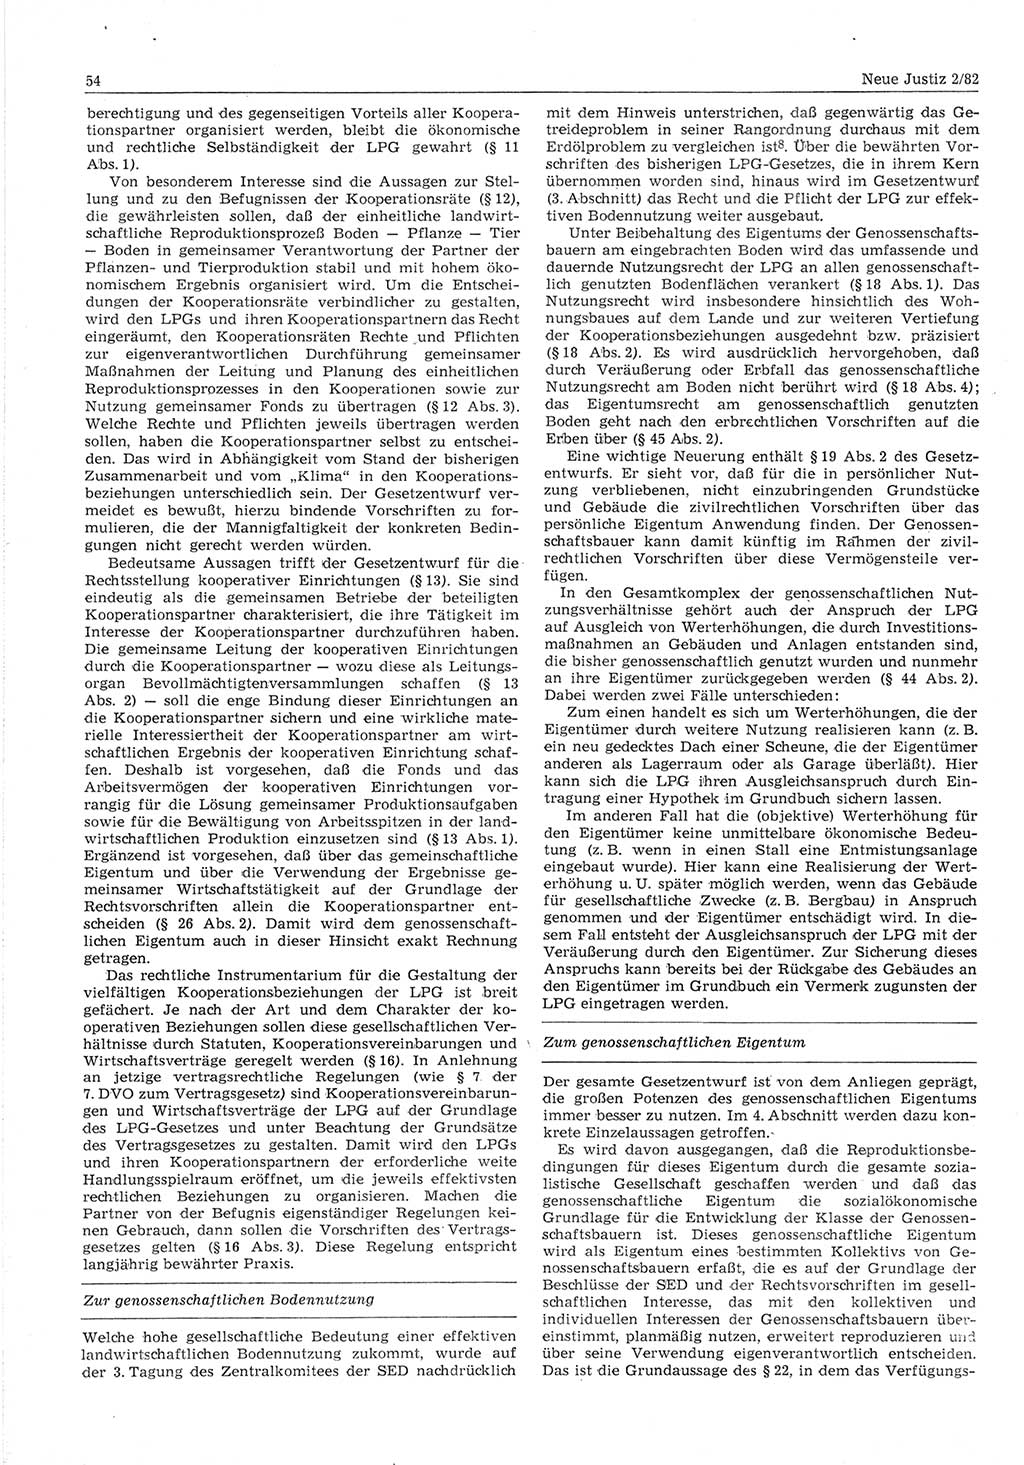 Neue Justiz (NJ), Zeitschrift für sozialistisches Recht und Gesetzlichkeit [Deutsche Demokratische Republik (DDR)], 36. Jahrgang 1982, Seite 54 (NJ DDR 1982, S. 54)